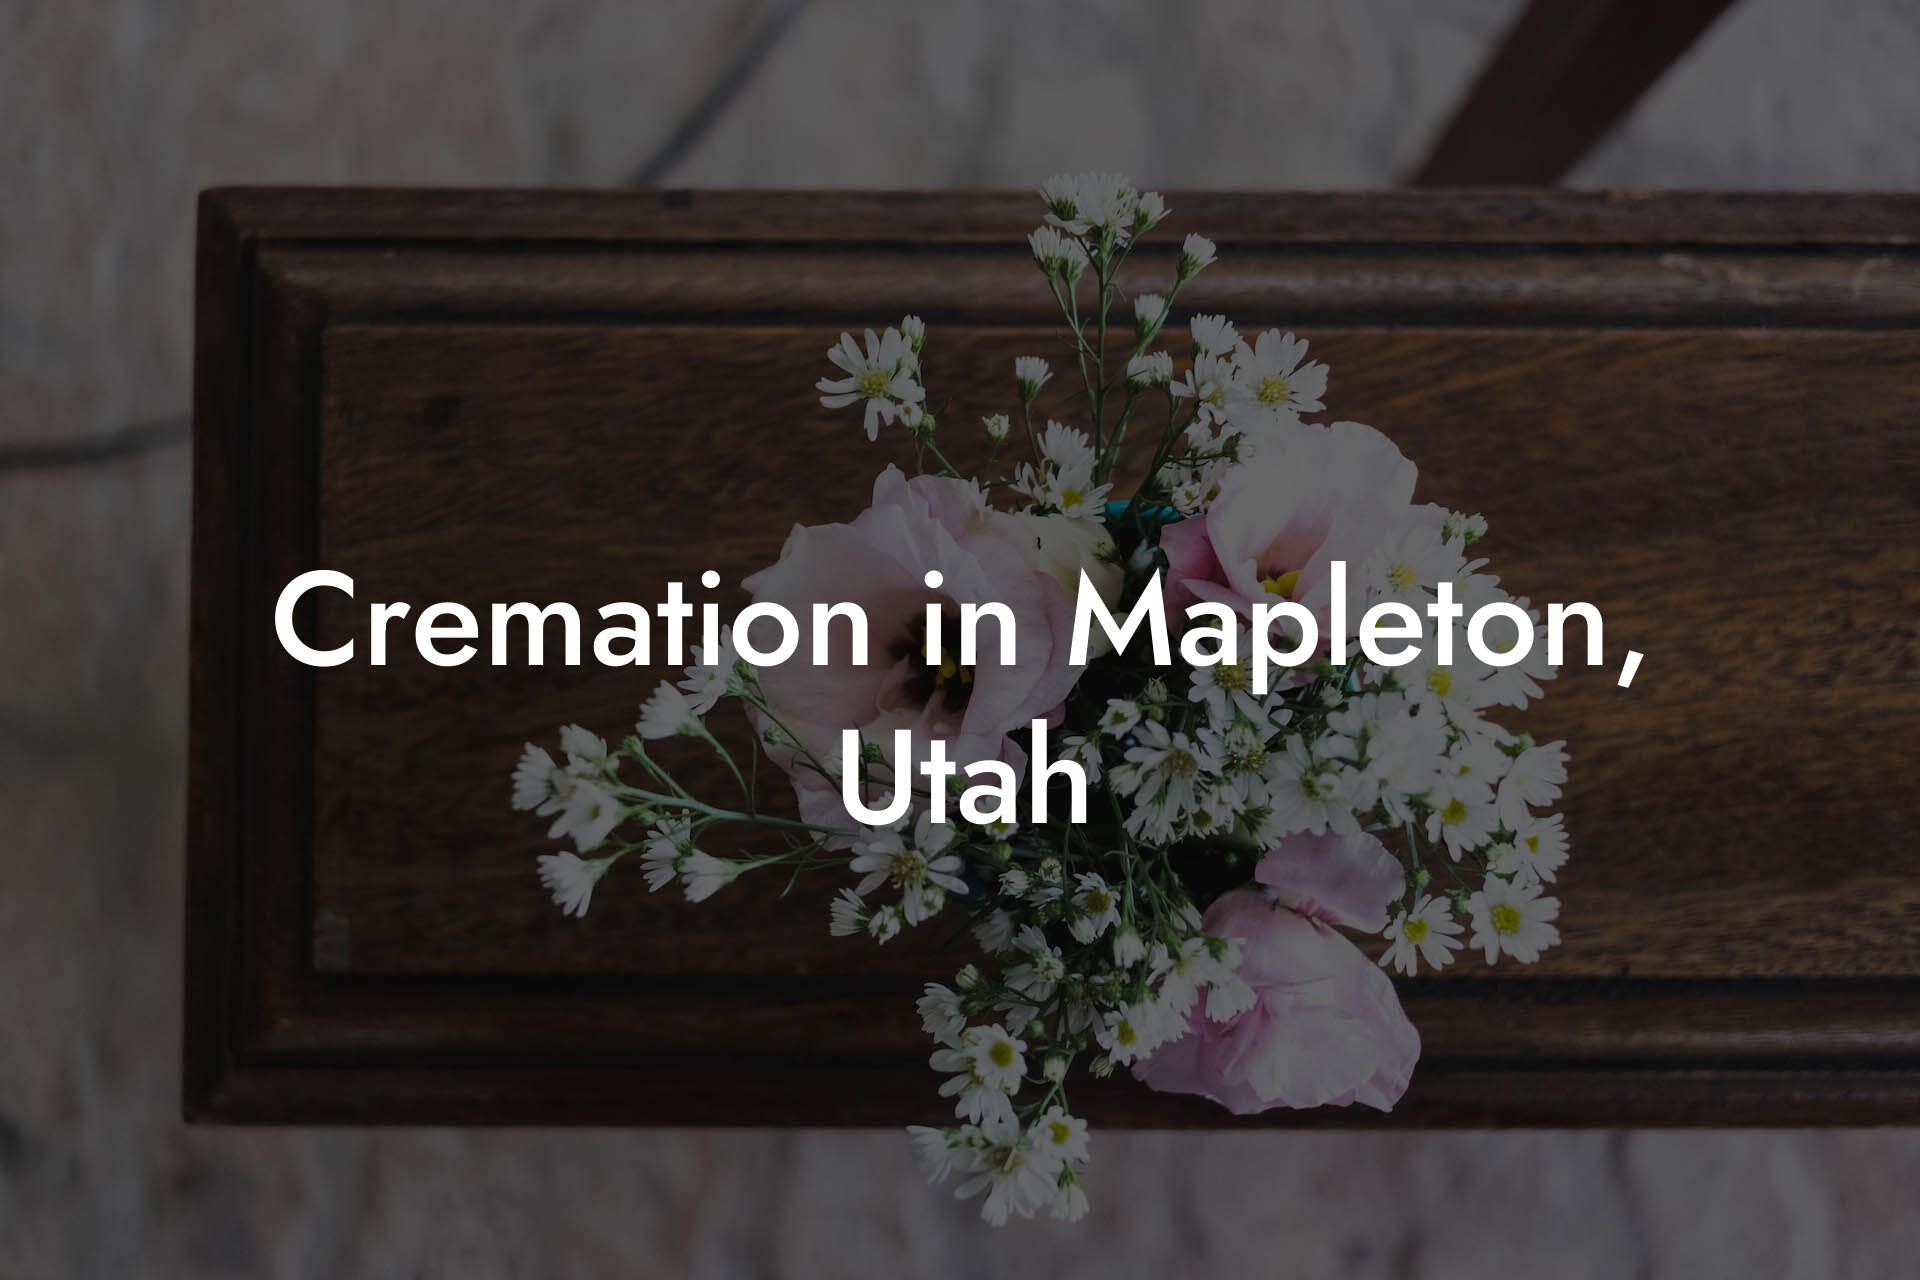 Cremation in Mapleton, Utah